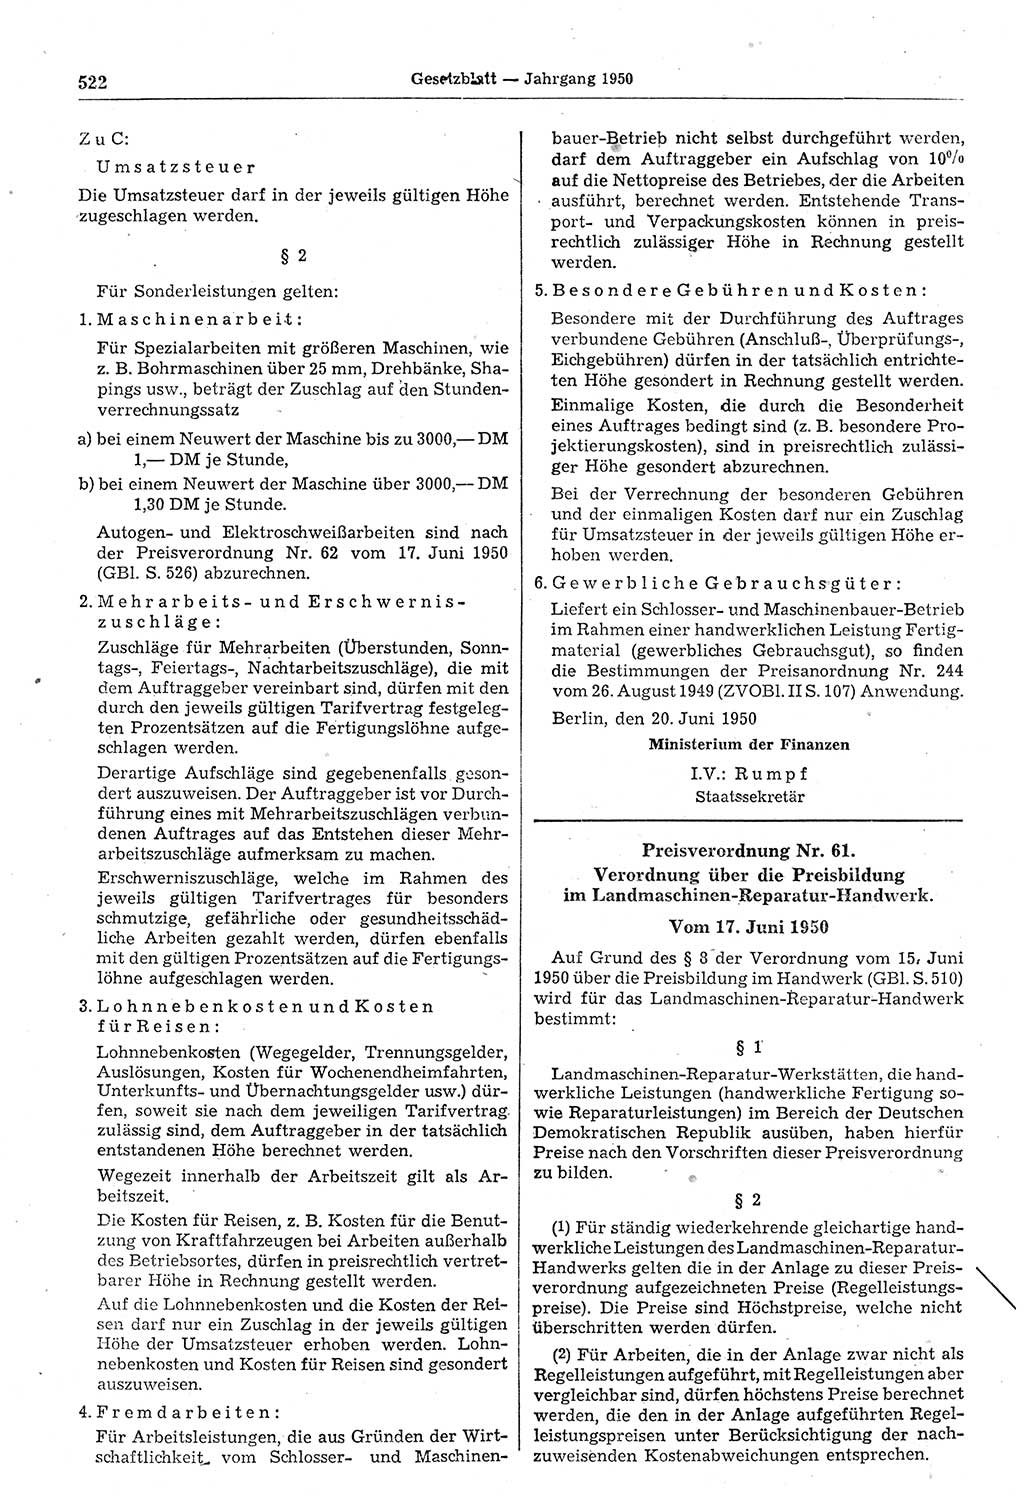 Gesetzblatt (GBl.) der Deutschen Demokratischen Republik (DDR) 1950, Seite 522 (GBl. DDR 1950, S. 522)